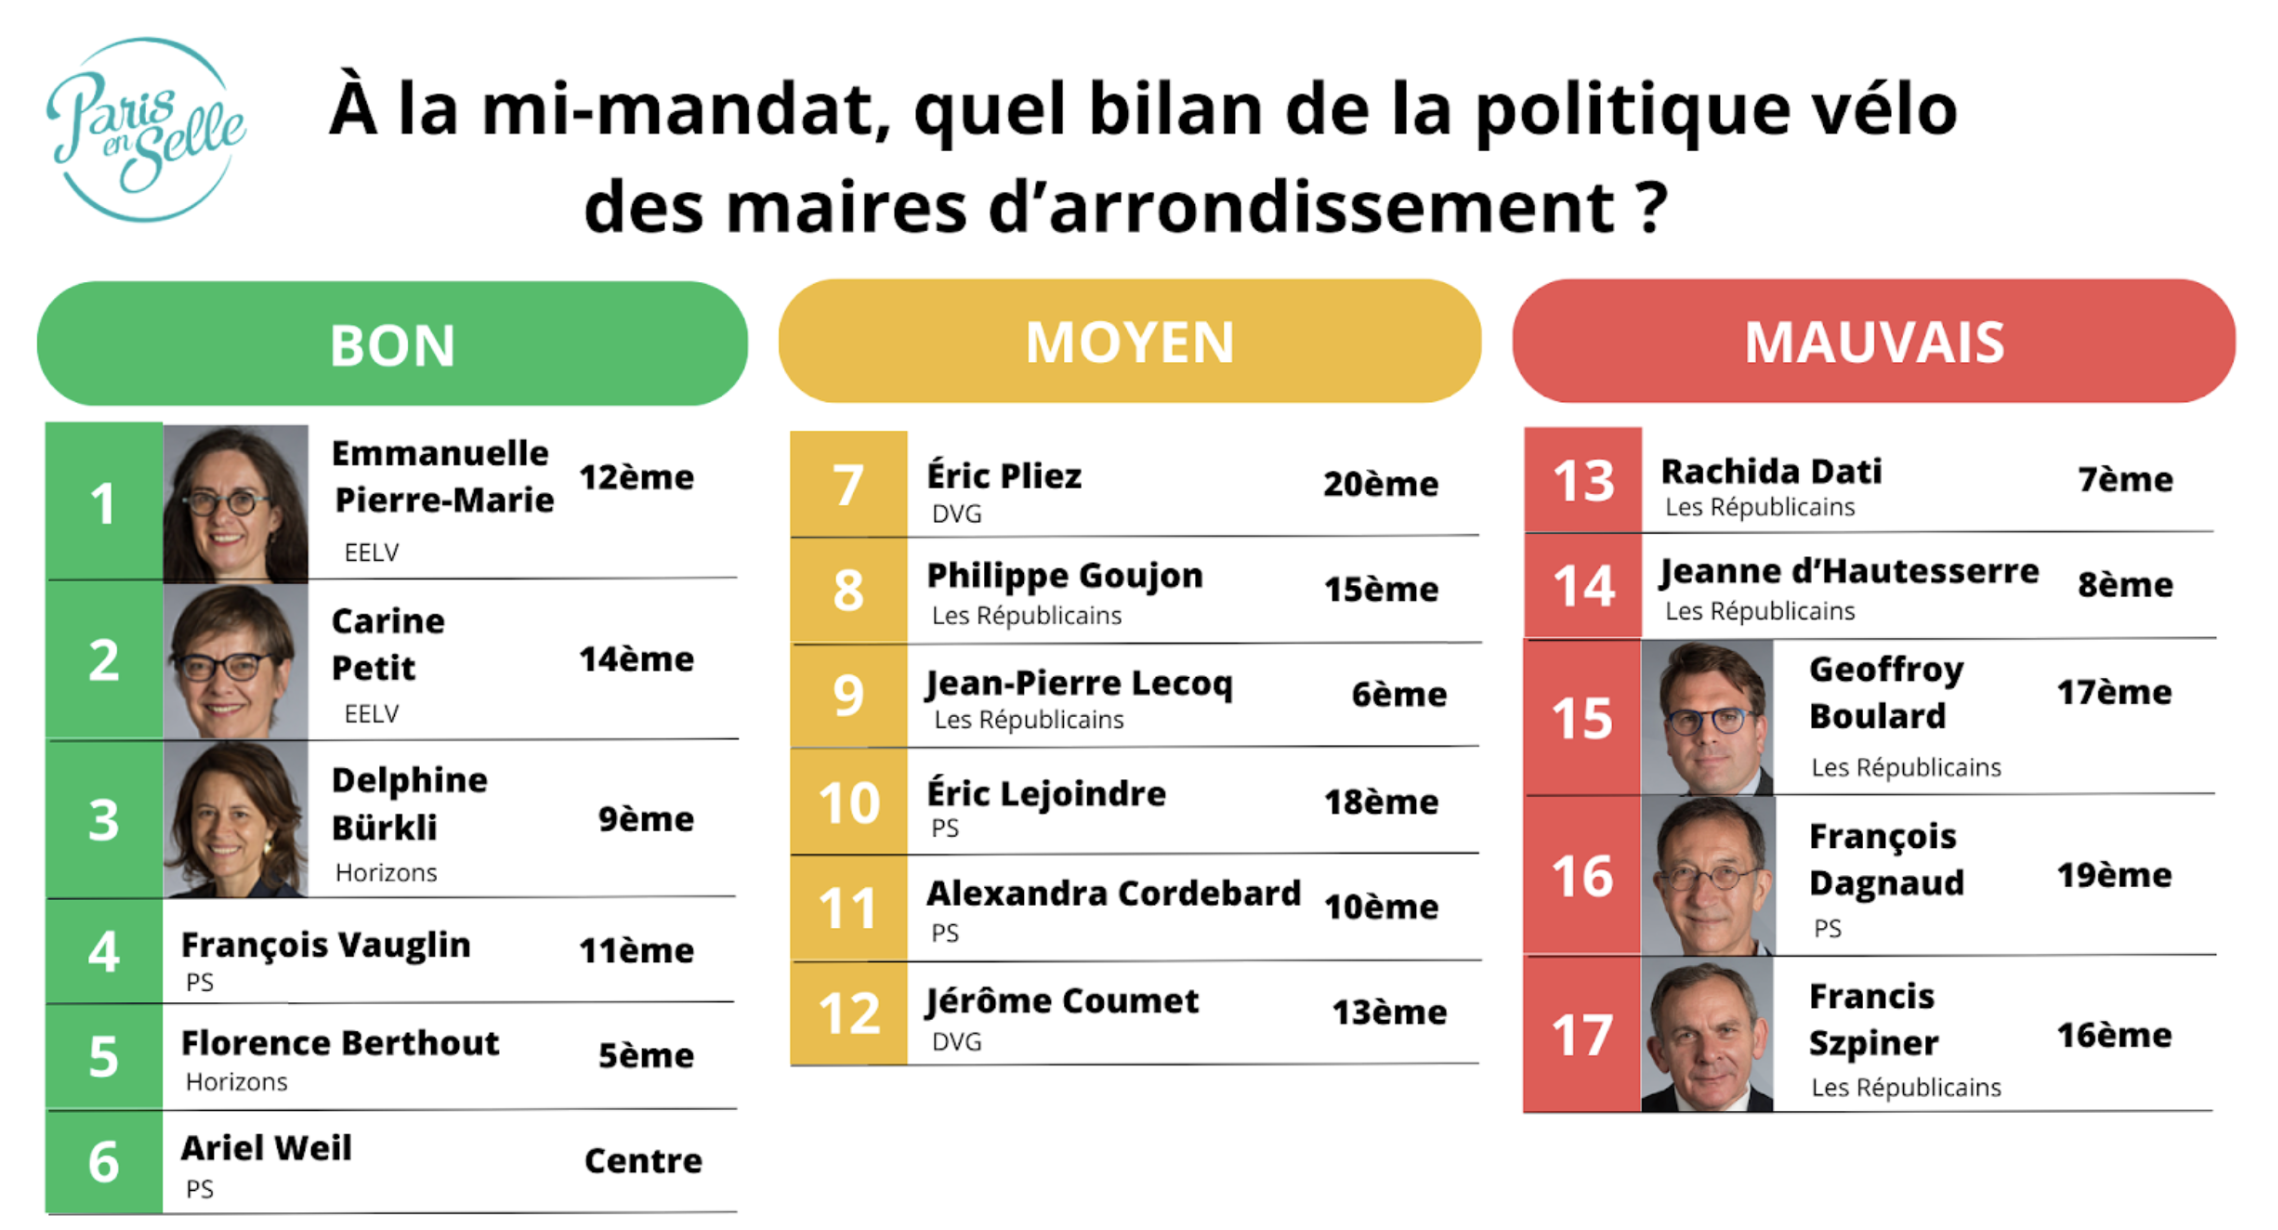 À la mi-mandat, Paris en Selle dévoile un classement des maires d’arrondissement sur leur politique en faveur du vélo.